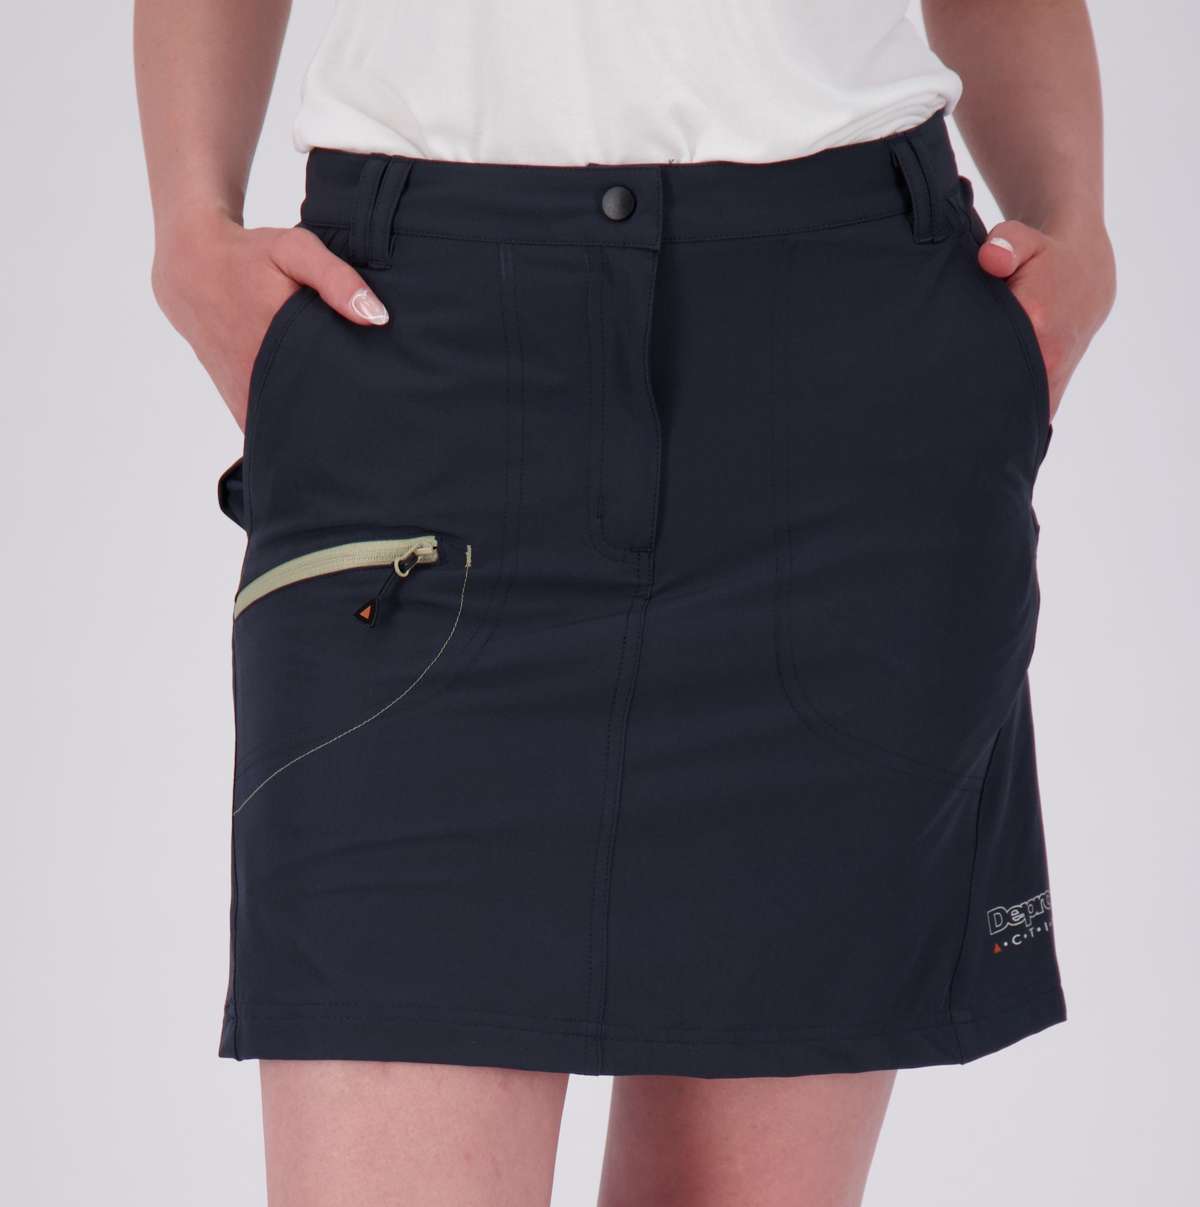 Шорты GRANBY NEW CS SKORT и короткая юбка также доступны в больших размерах.